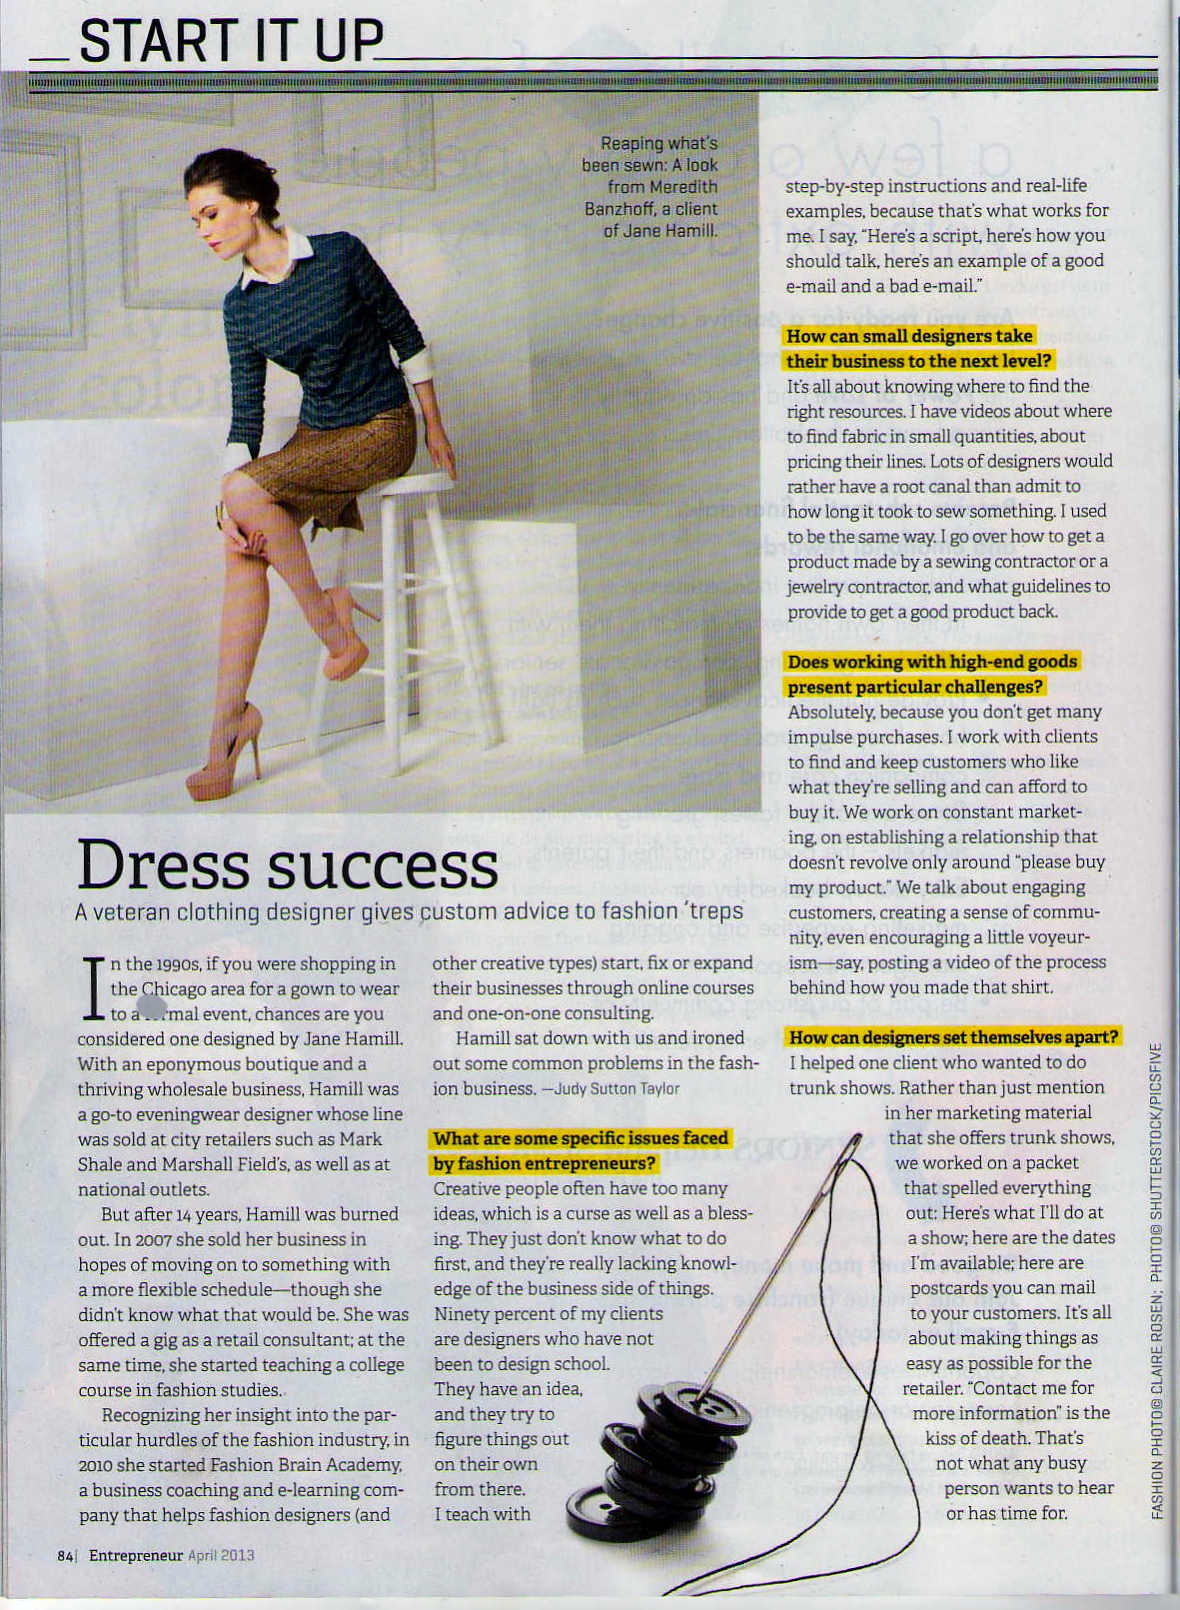 page 84 - Entrepreneur magazine April issue